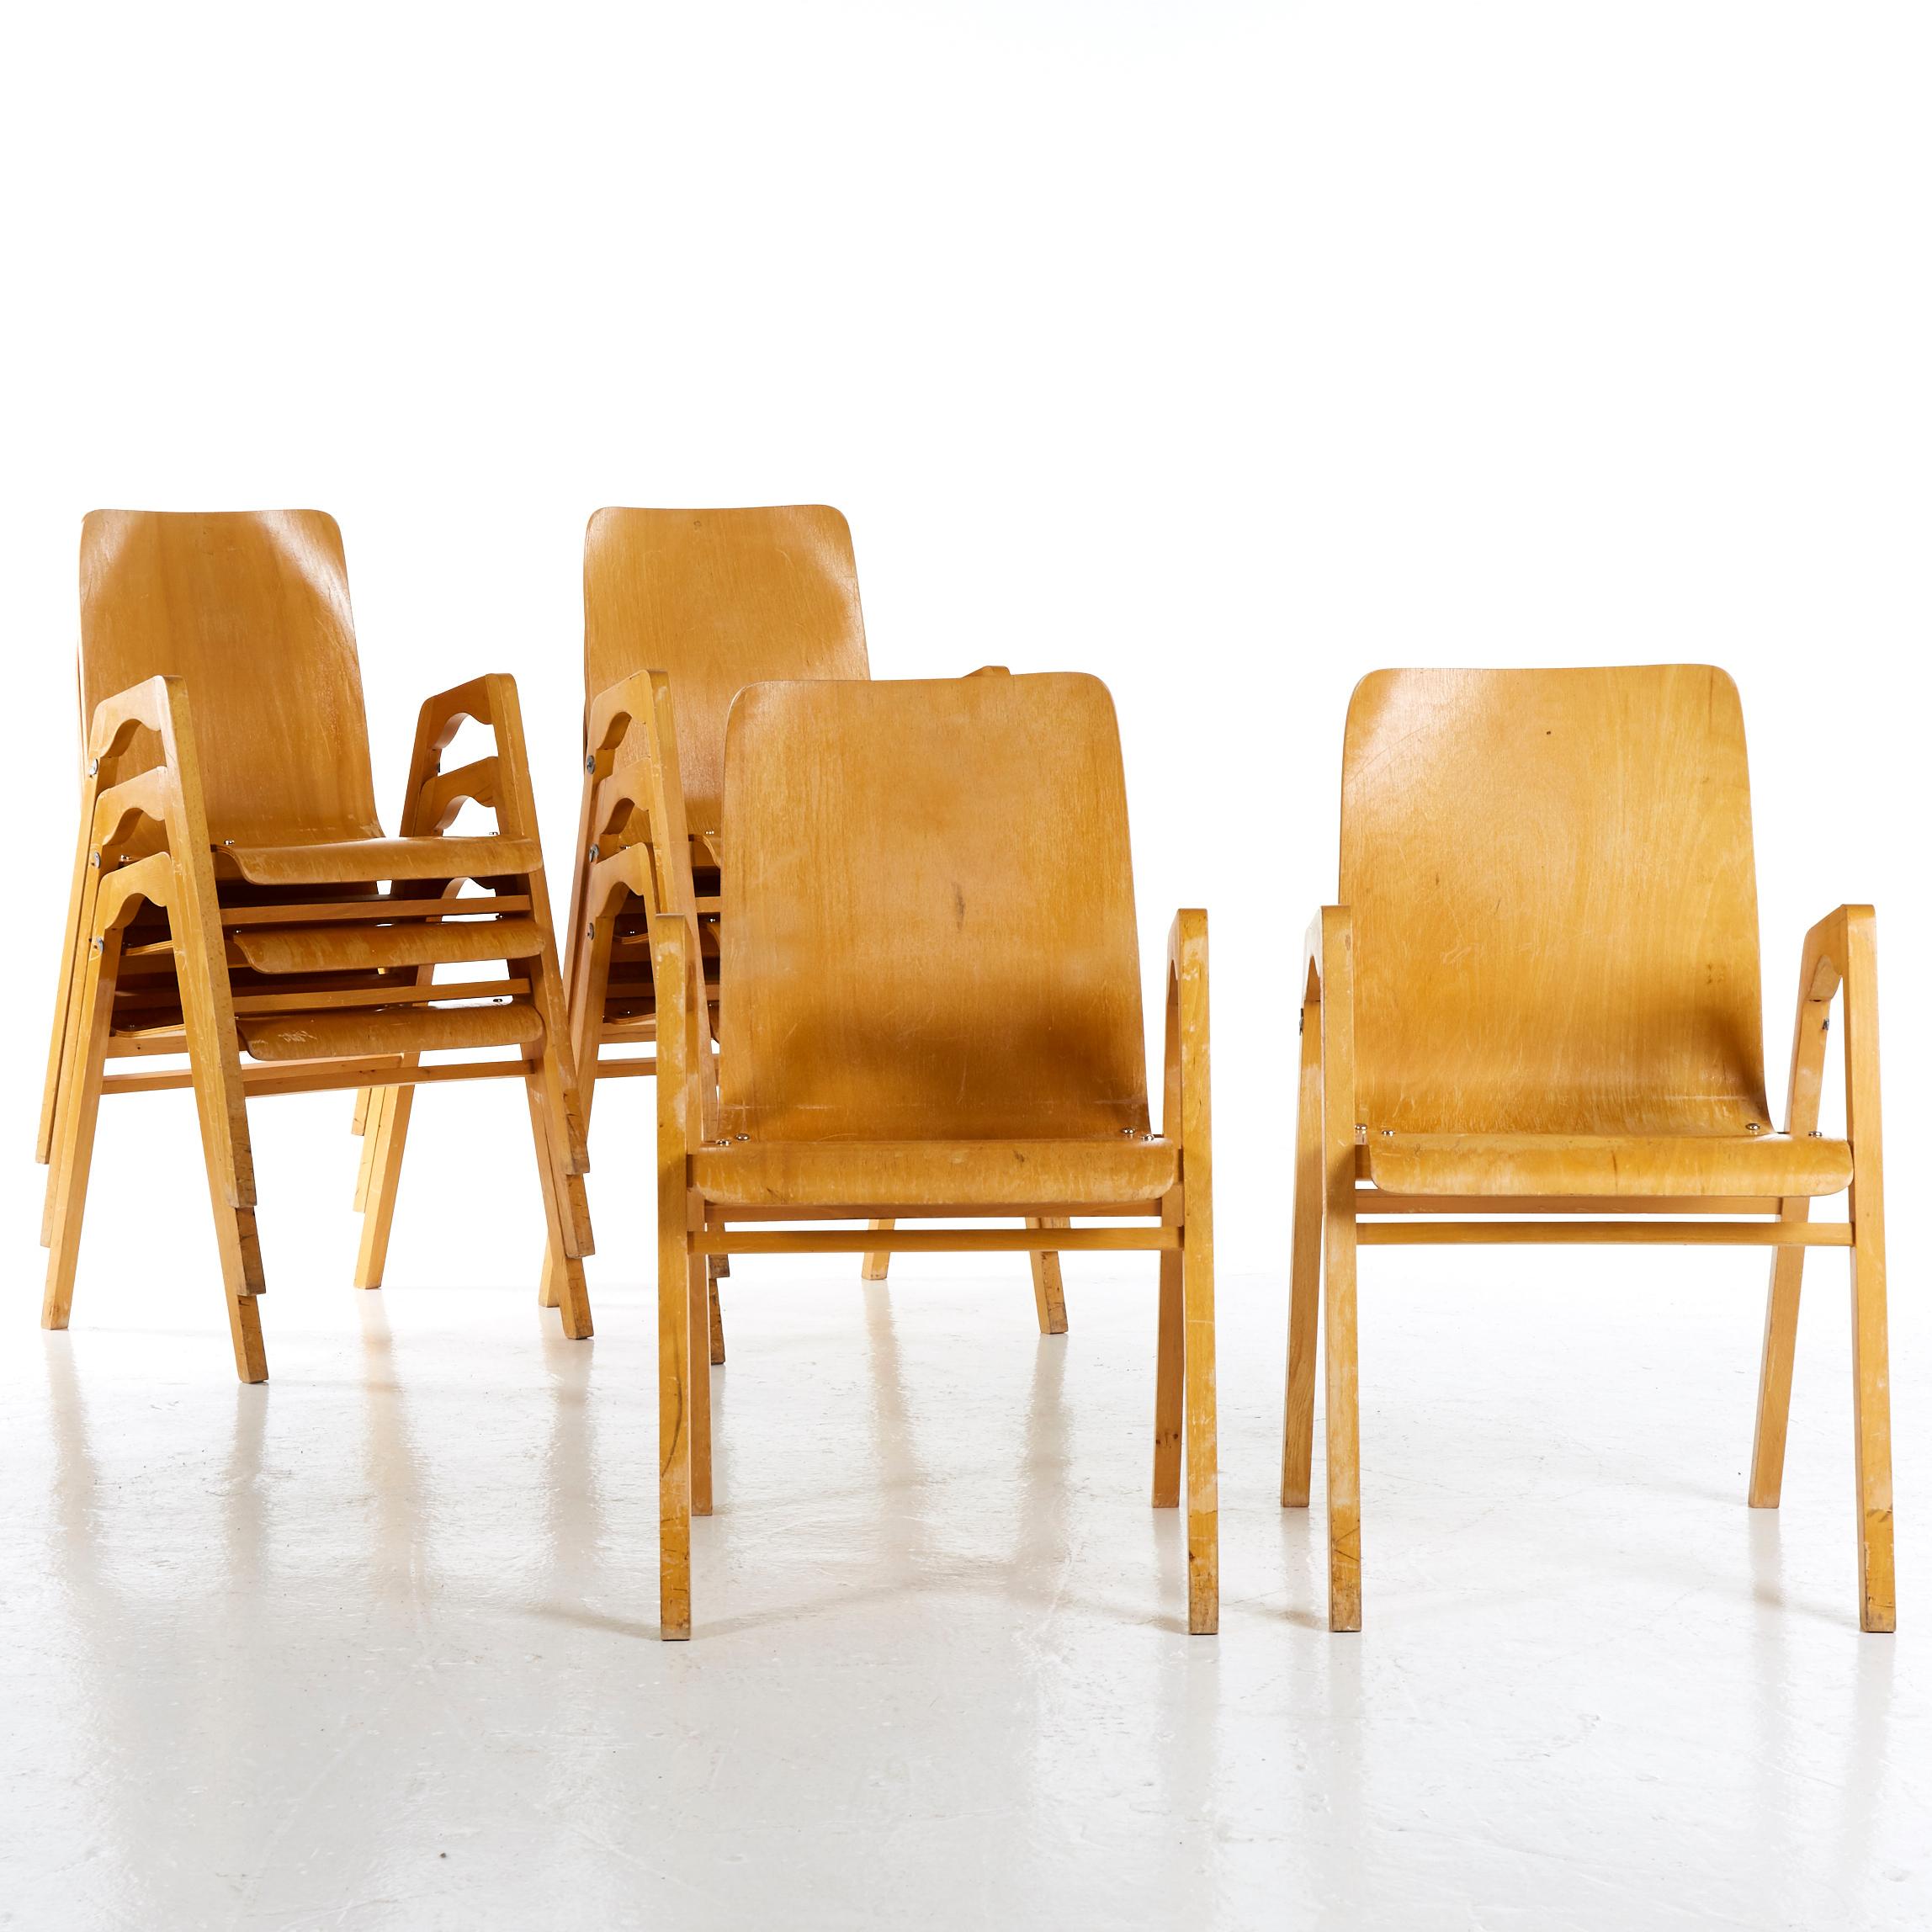 Axel Larsson pour Svängsta Stilmöbler, seconde moitié du XXe siècle, ensemble de huit fauteuils, structure en bouleau massif, assise et dossier en placage de bouleau moulé en couches, empilables.
 